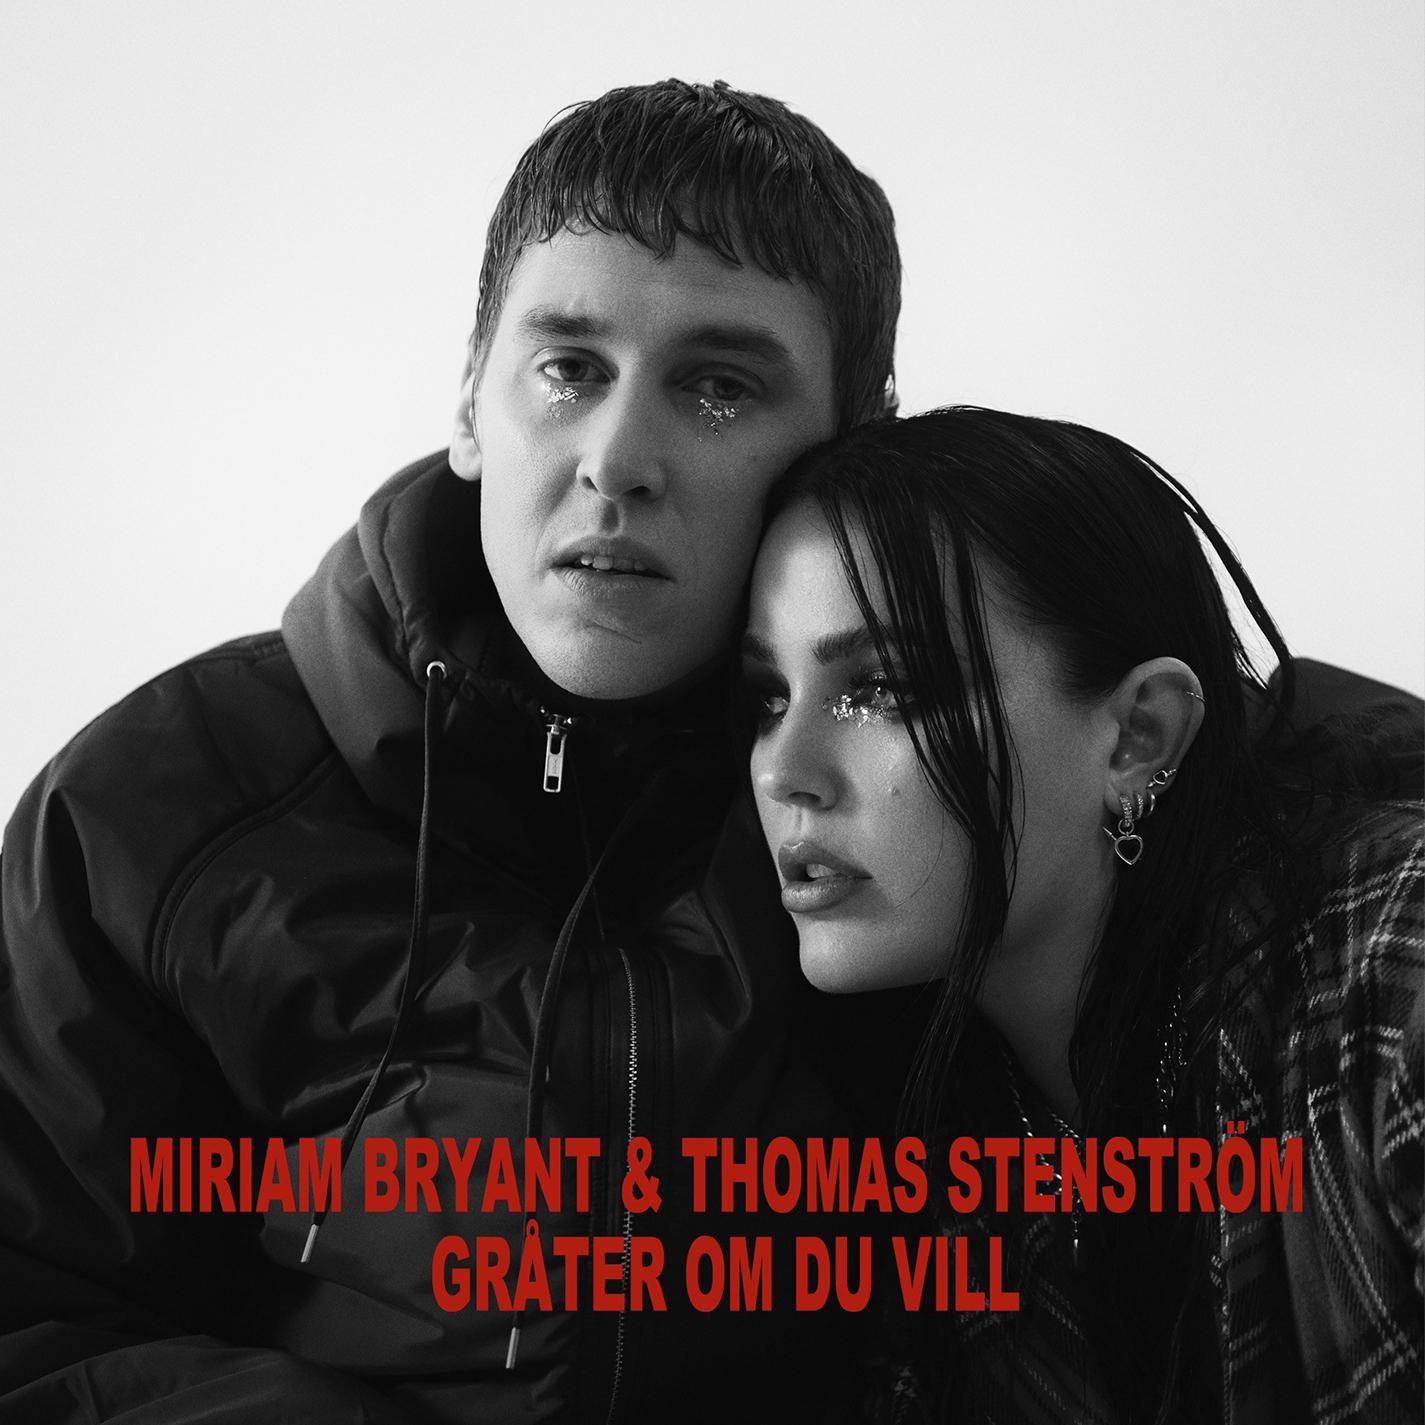 Gråter om du vill歌词 歌手Miriam Bryant / Thomas Stenström-专辑Gråter om du vill-单曲《Gråter om du vill》LRC歌词下载